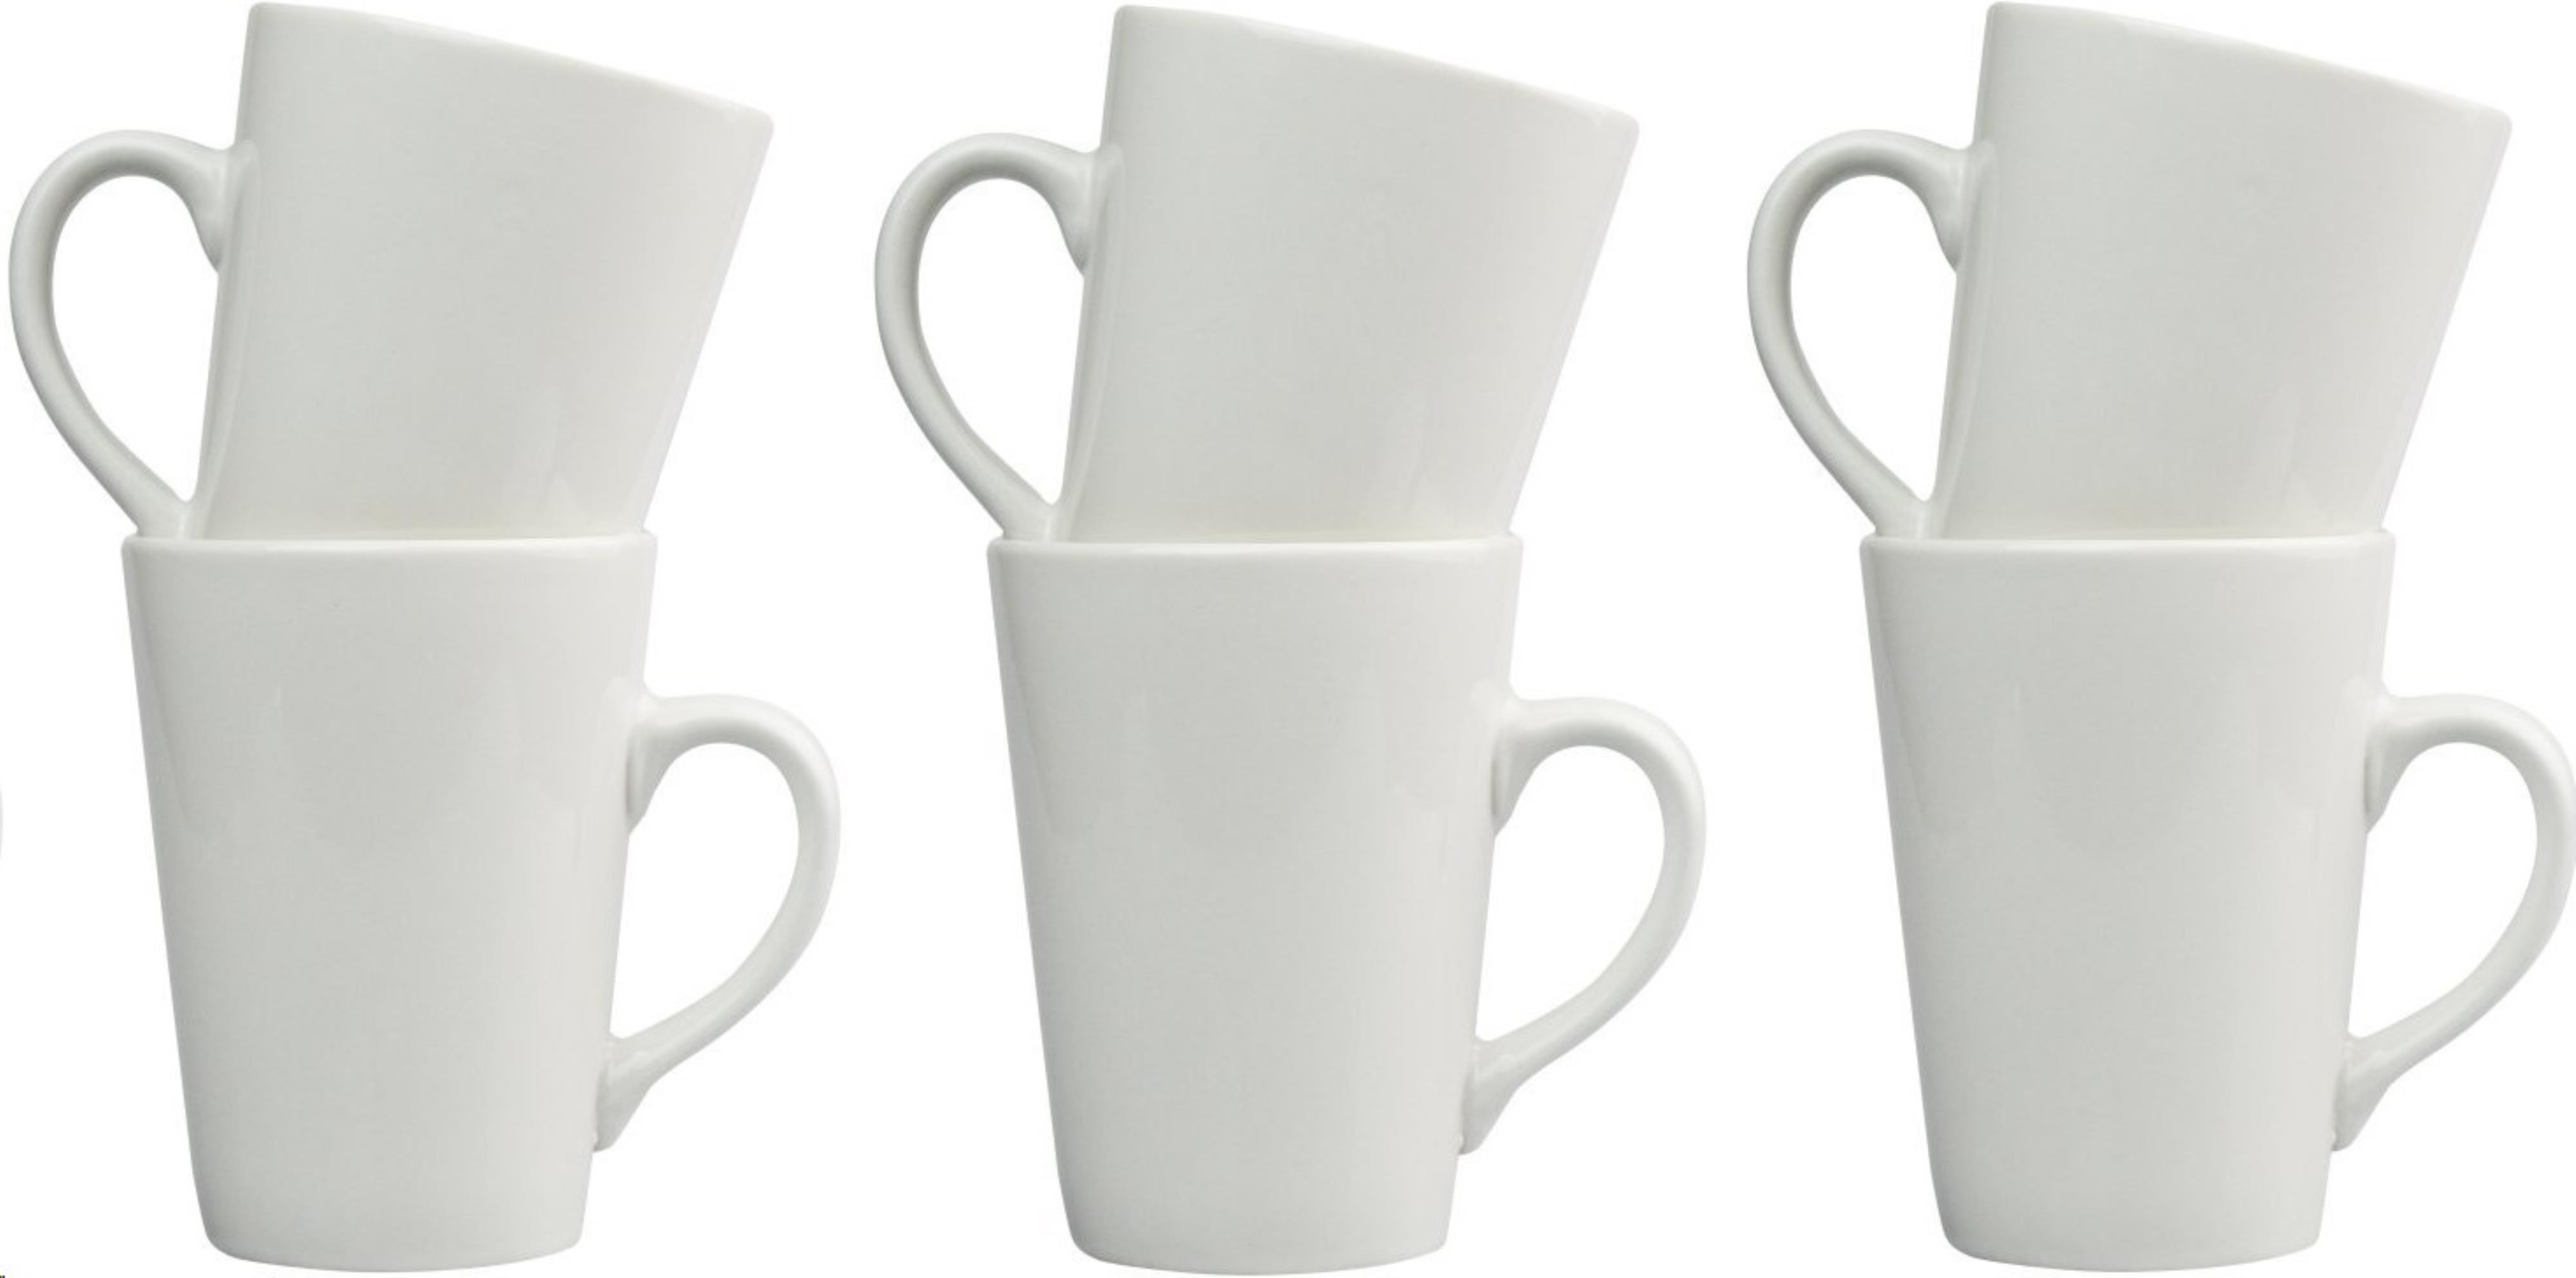 Cups/Mugs/Glasses